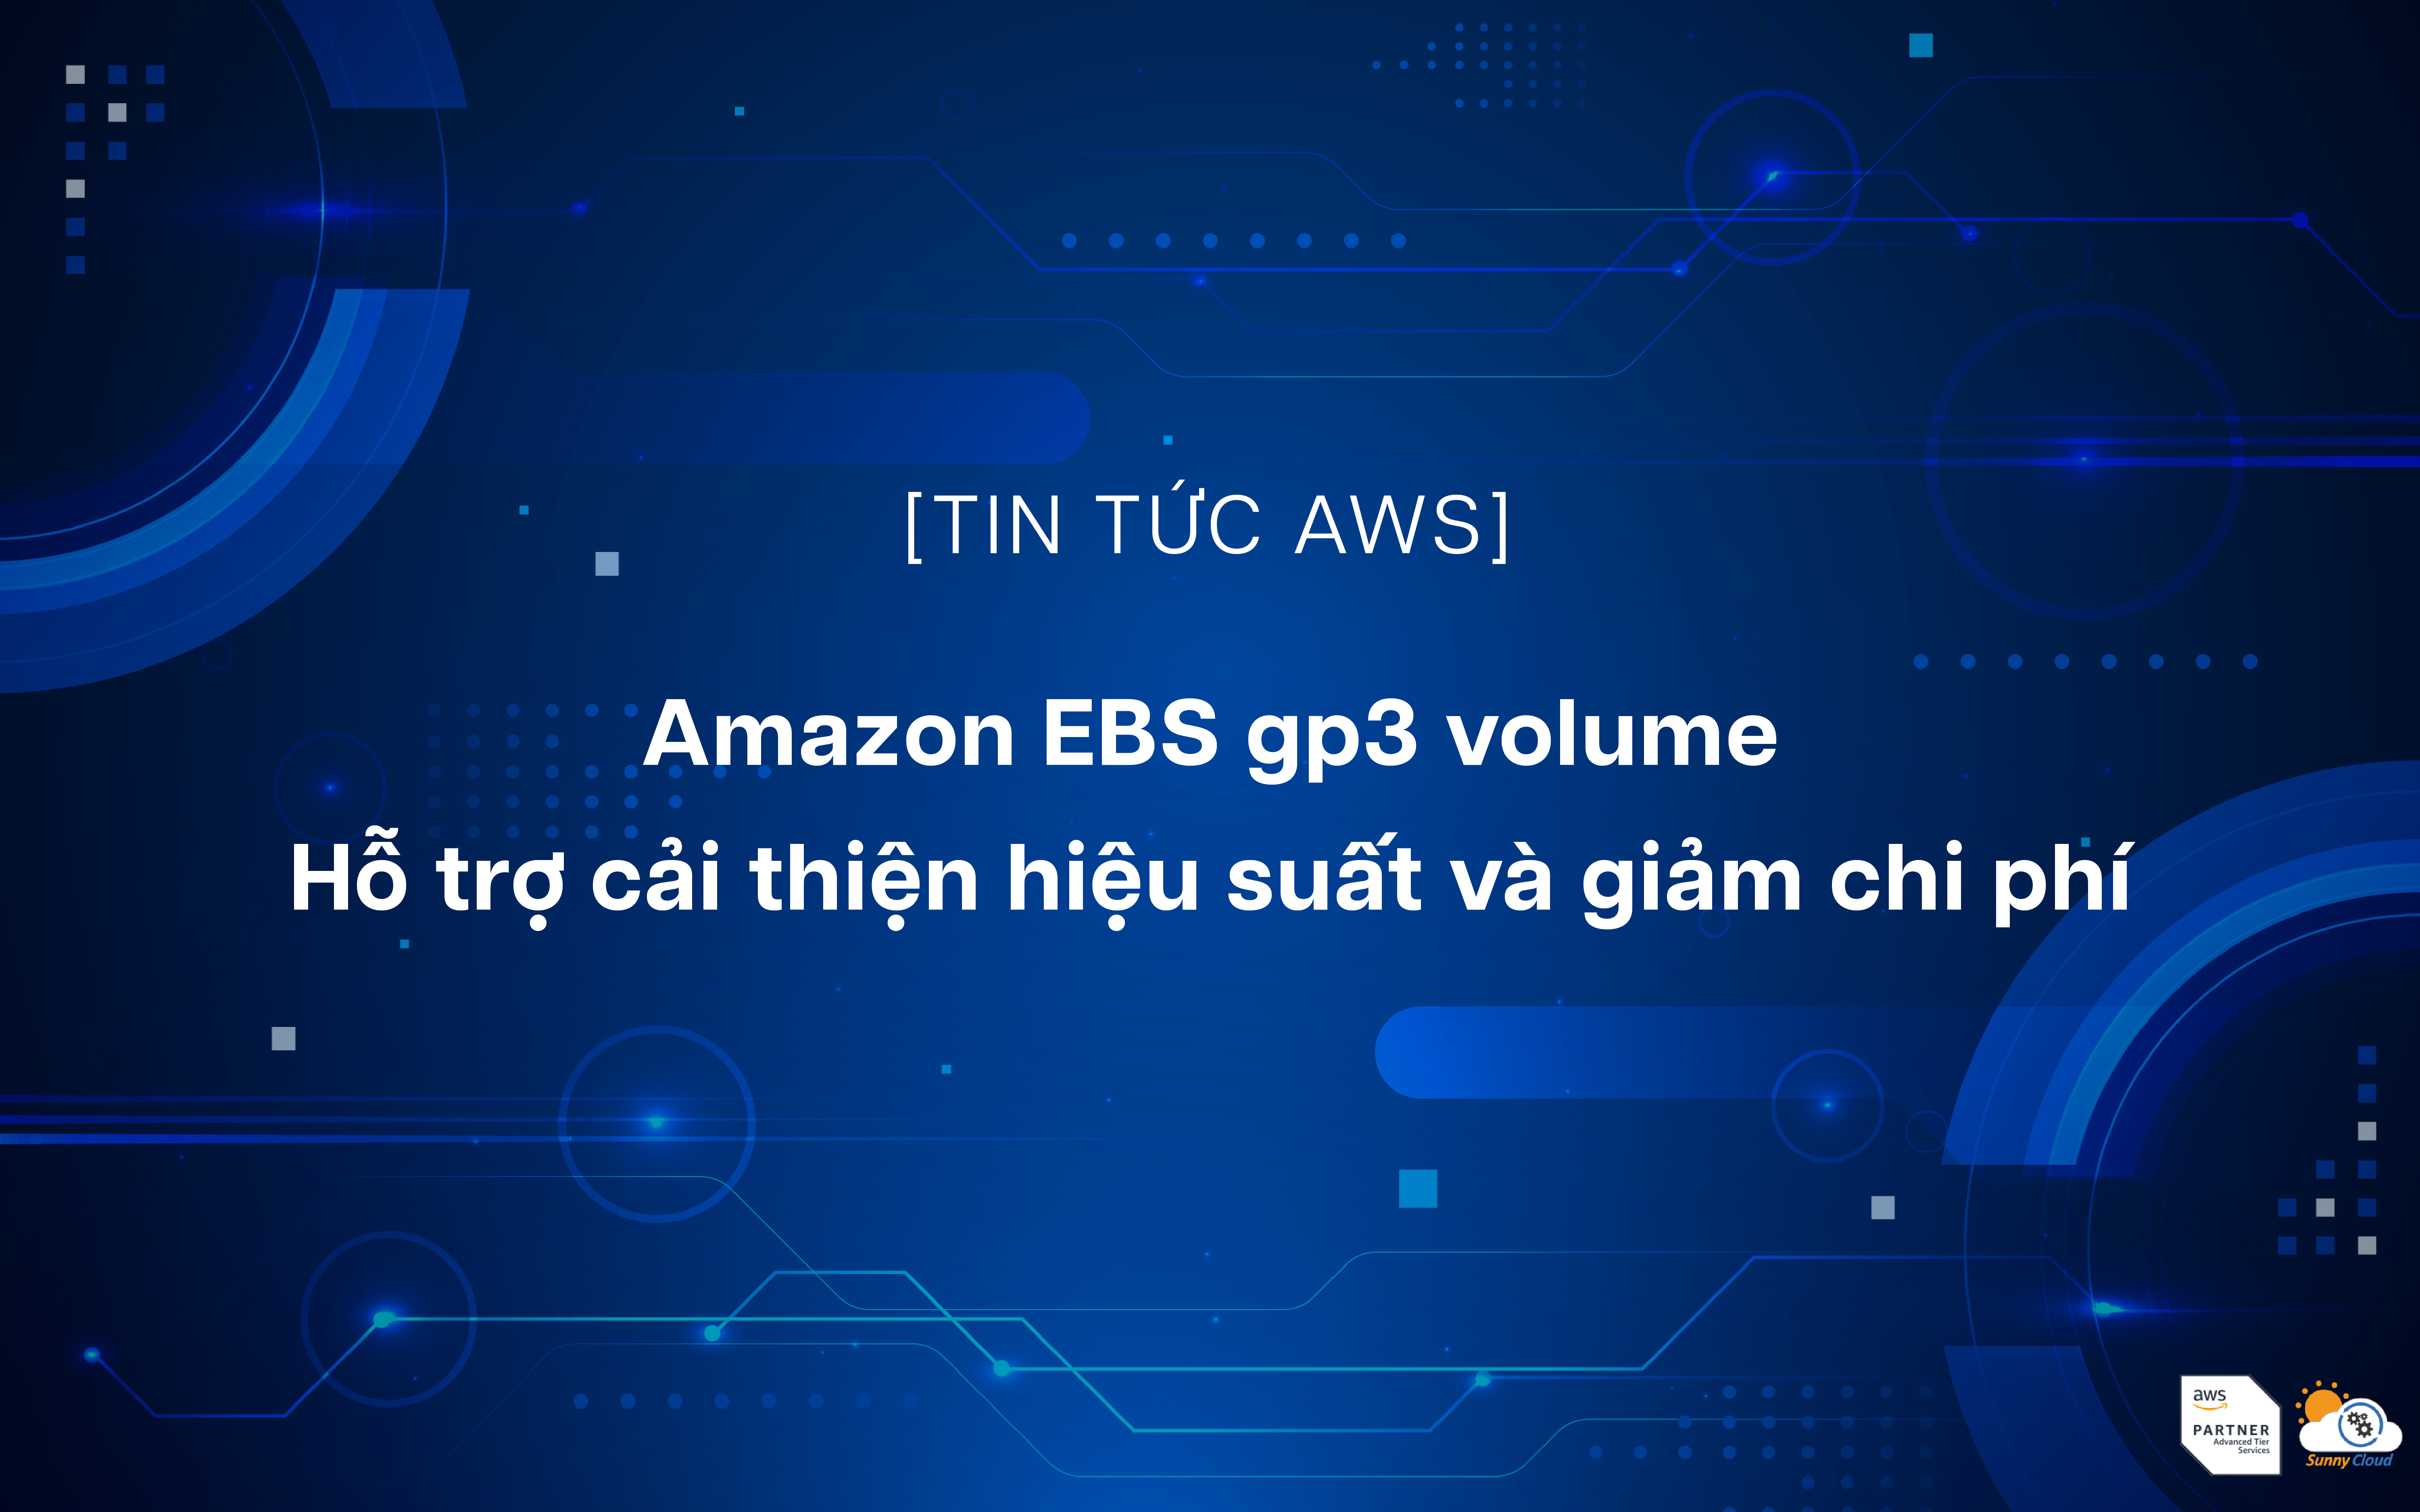 Amazon EBS gp3 volume – Hỗ trợ cải thiện hiệu suất và giảm chi phí